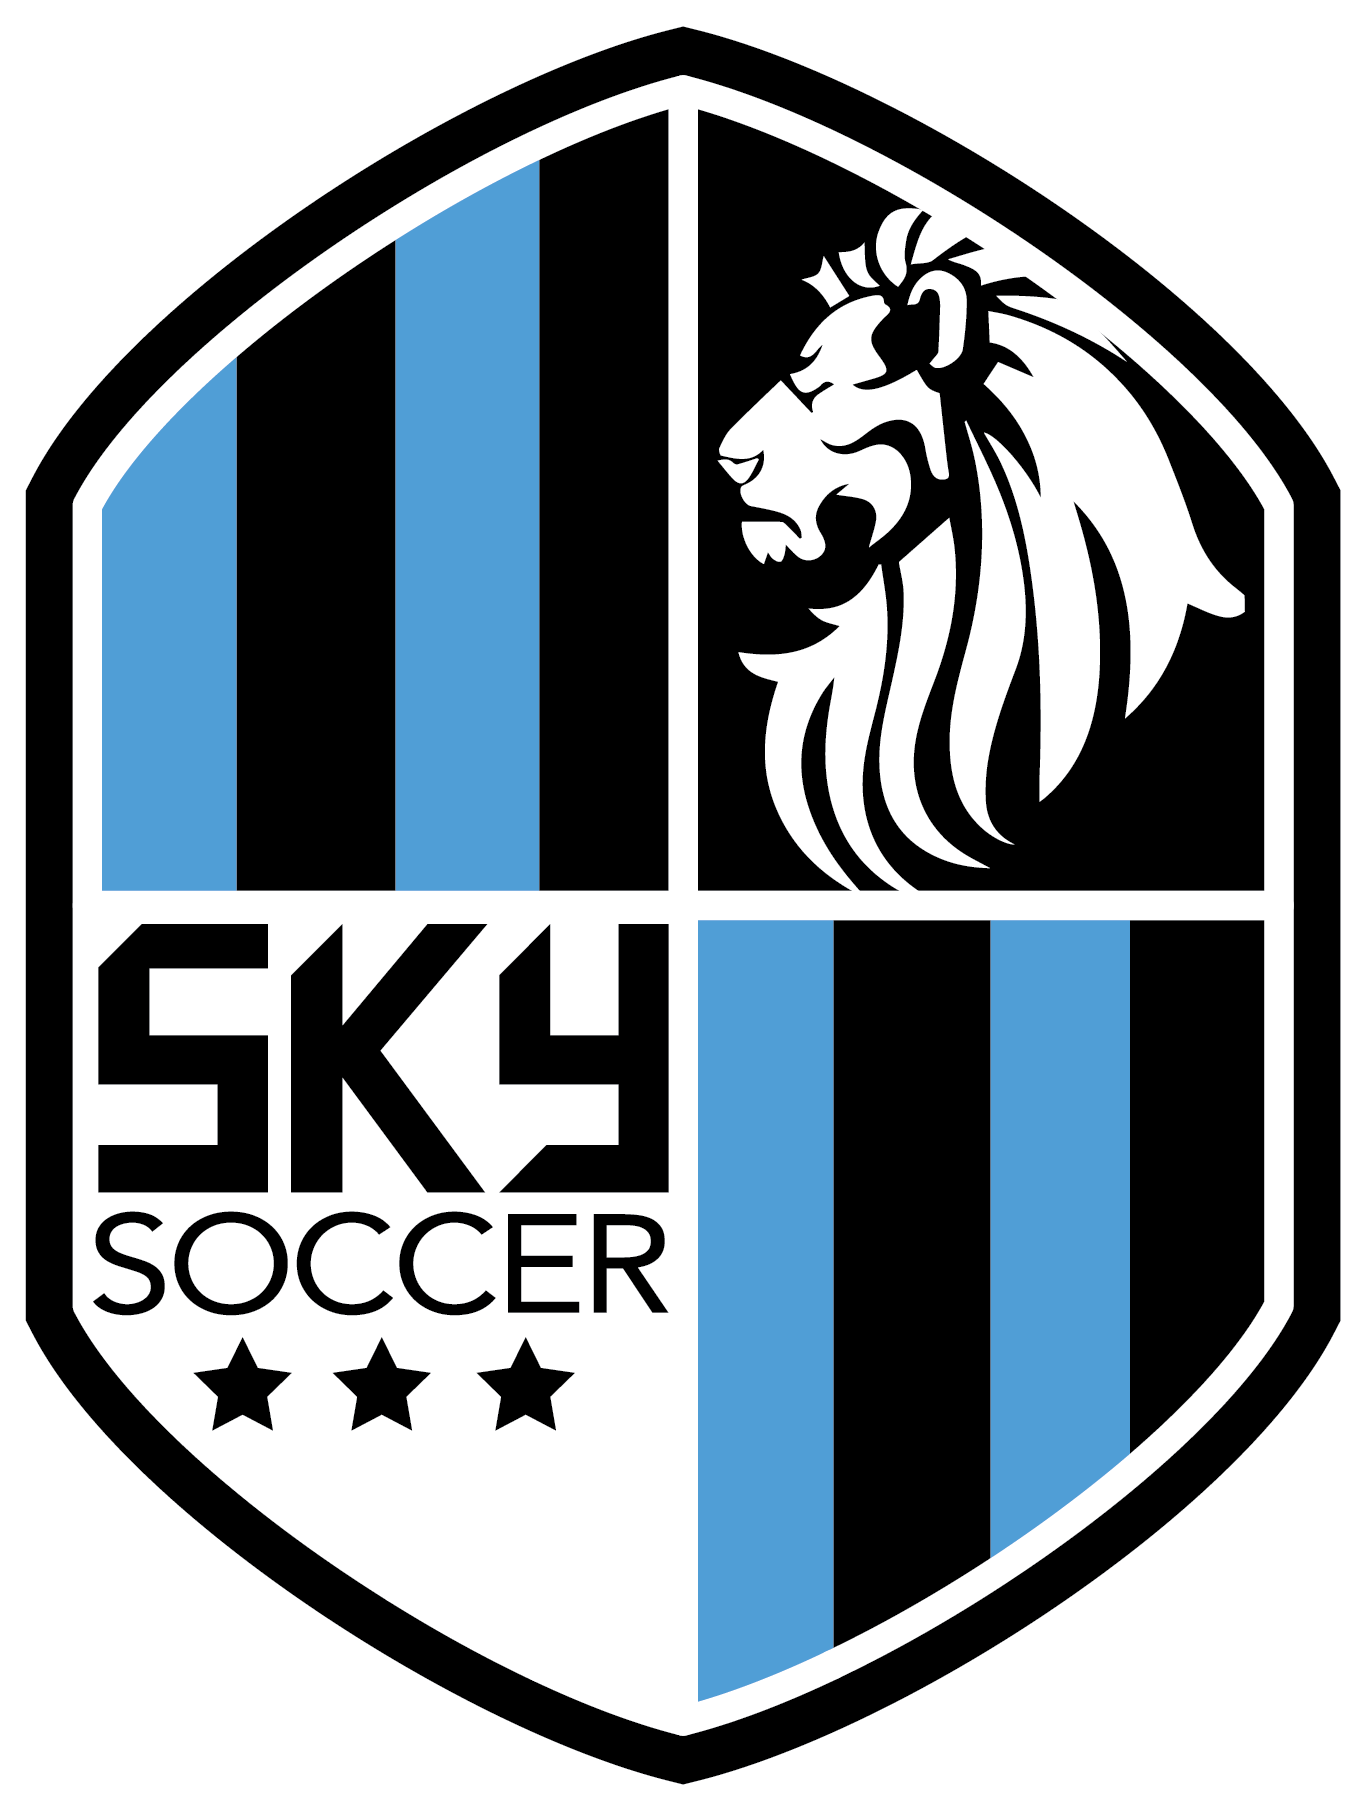 Top Soccer - Sky Soccer Logo (1366x1811)